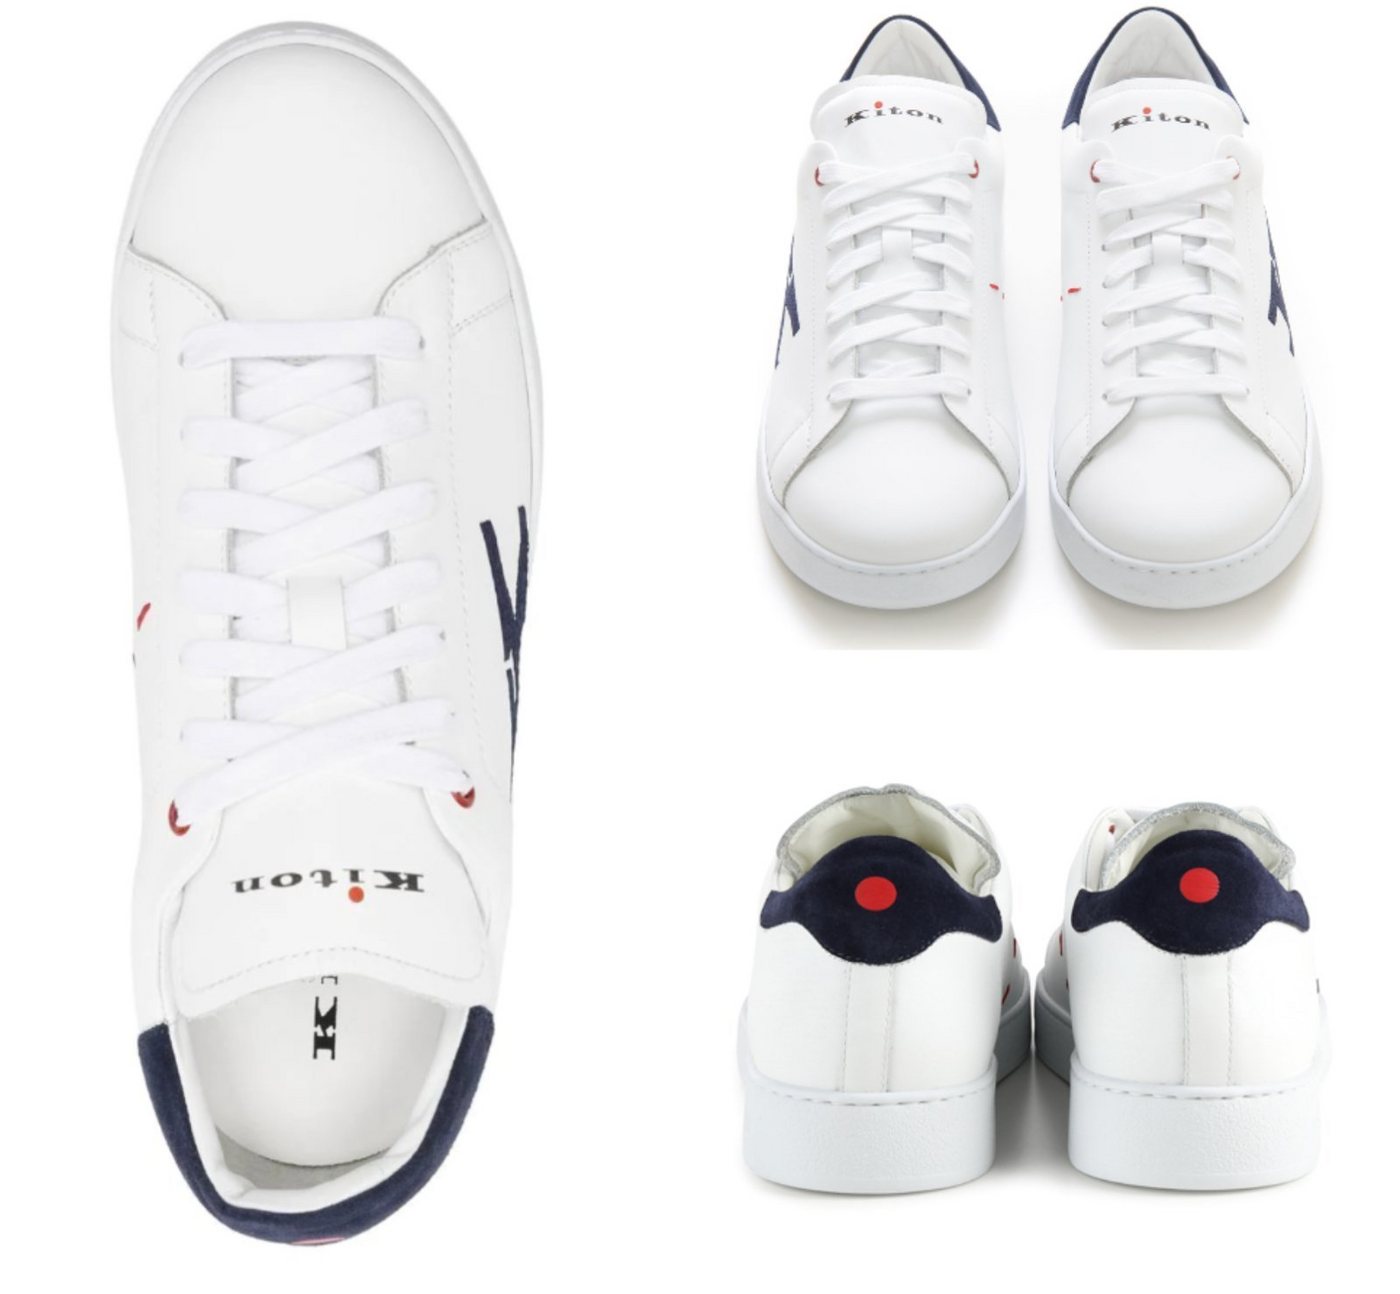 Kiton KITON Top-Stitched K Logo Ciro Paone Sneakers Runners Schuhe Shoes Tra Sneaker von Kiton